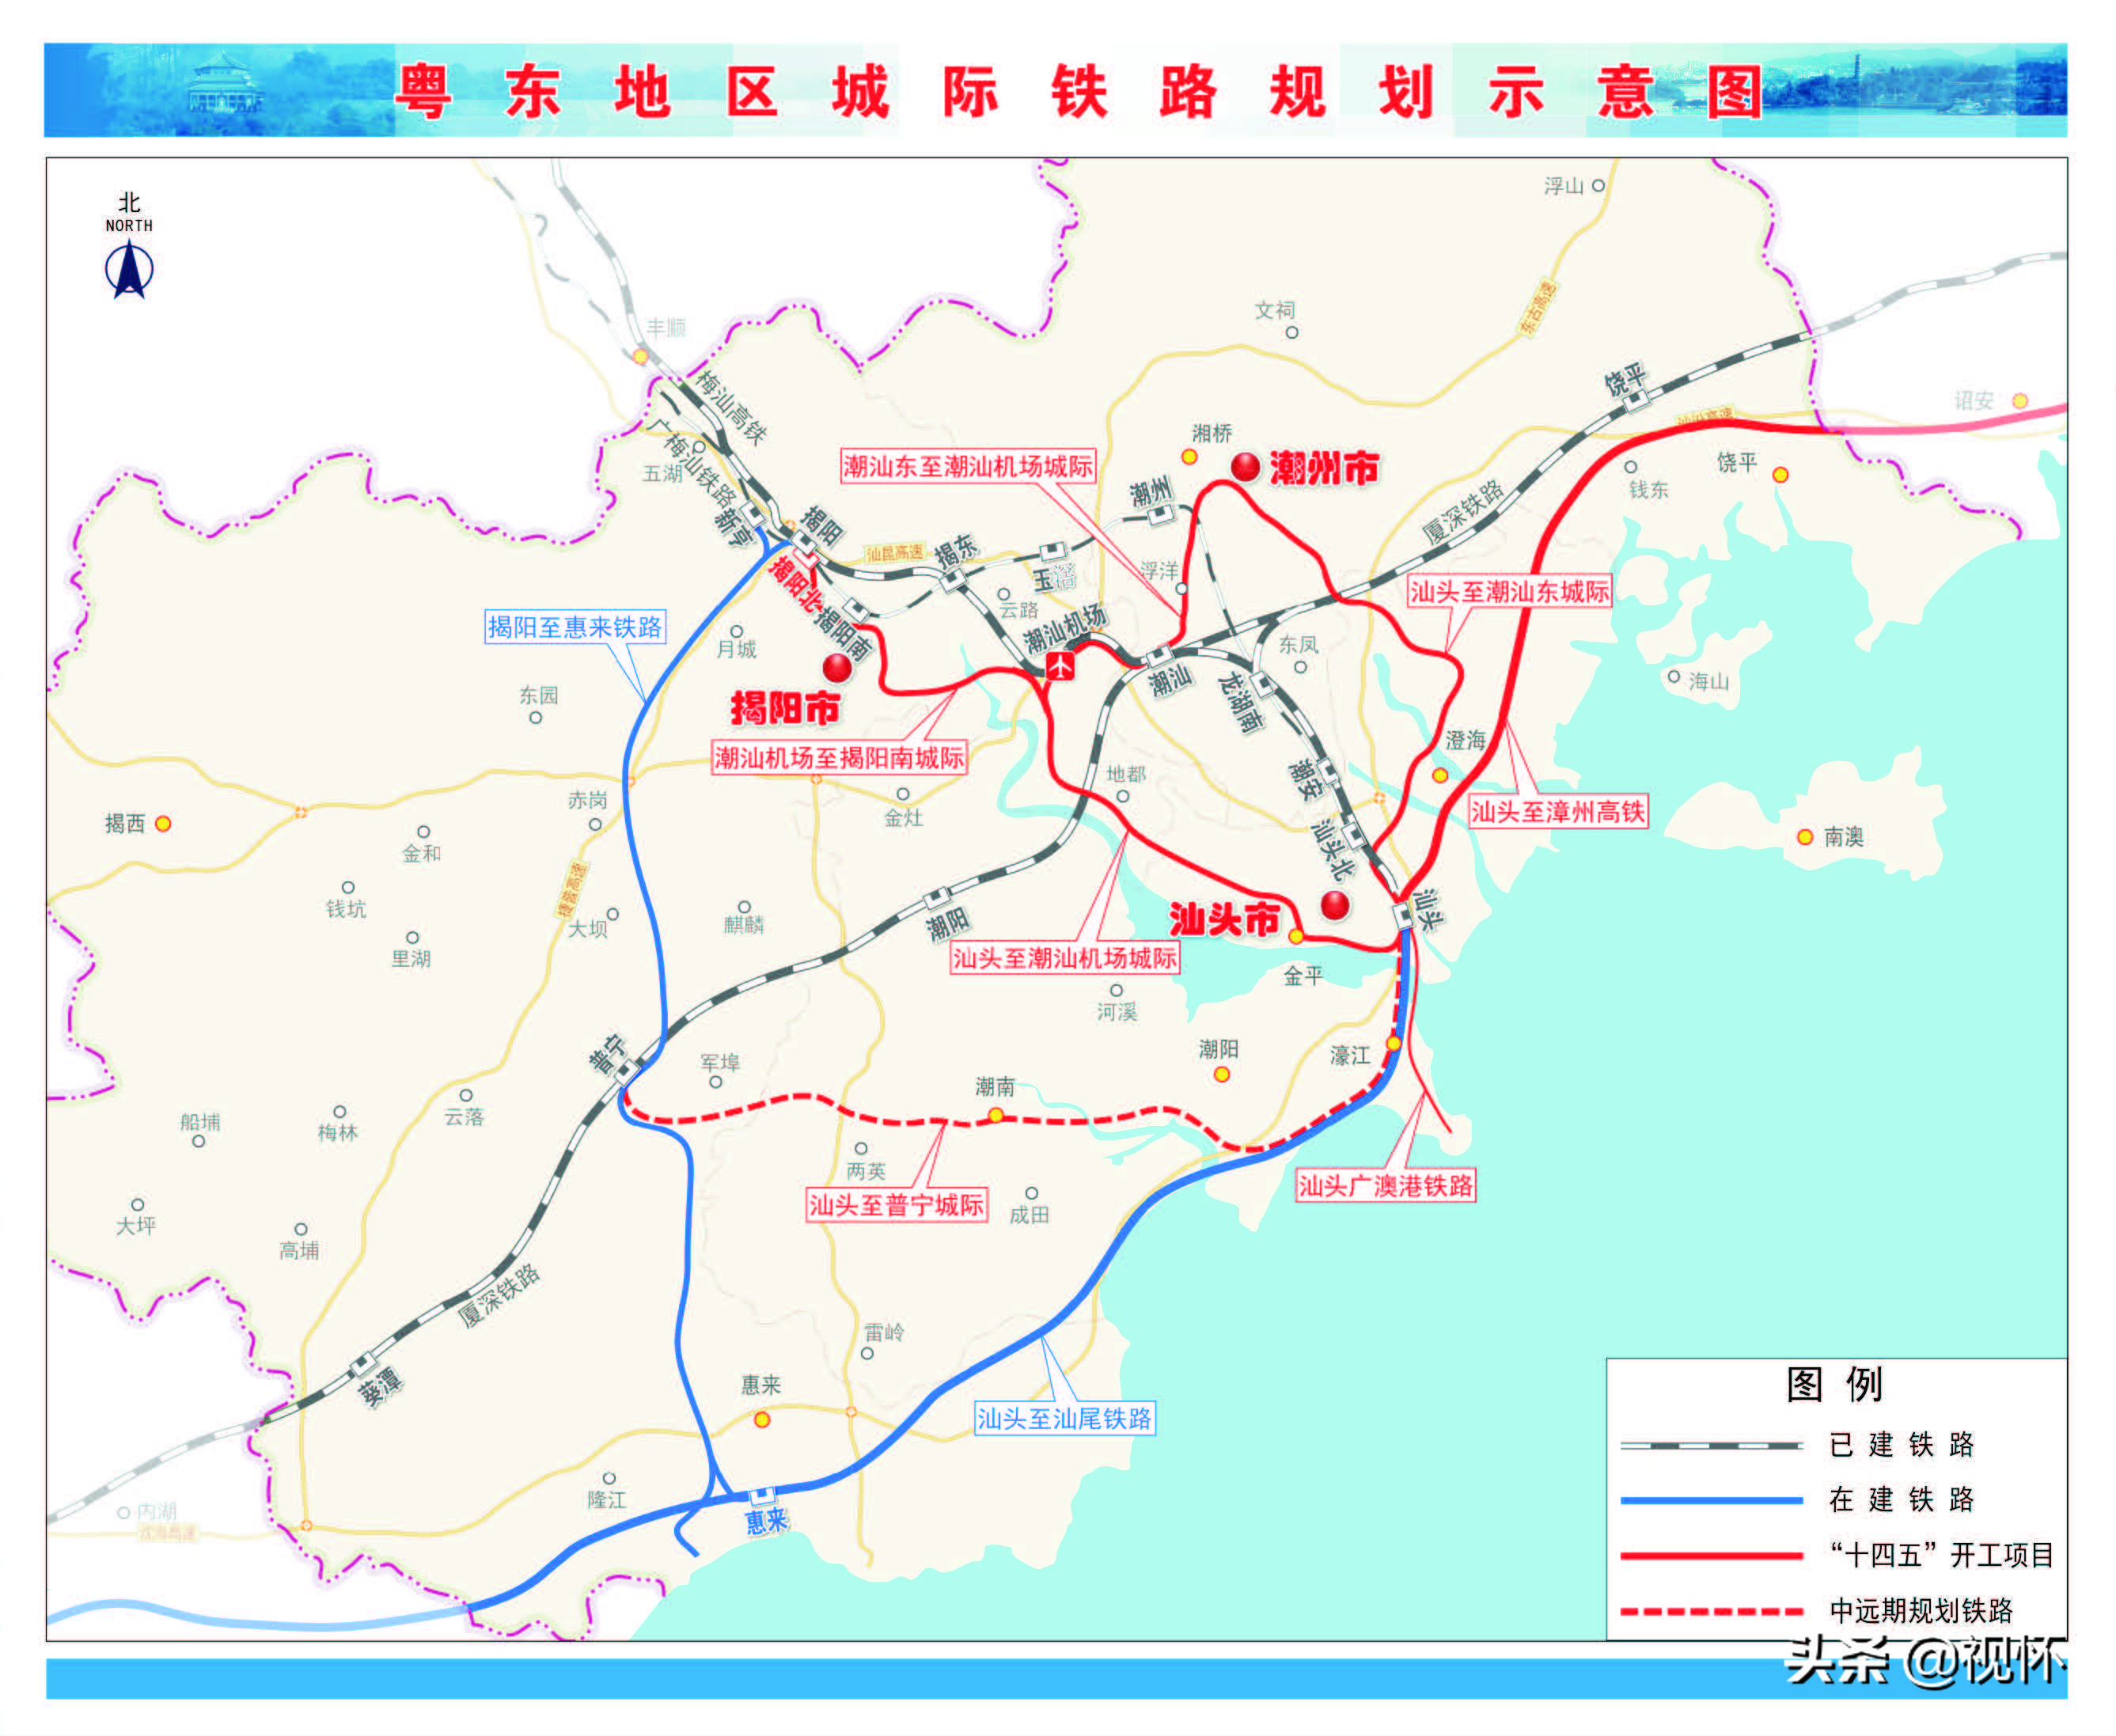 粤东城际铁路:该项目一环一射线由5条线路组成,其中汕头至潮汕机场